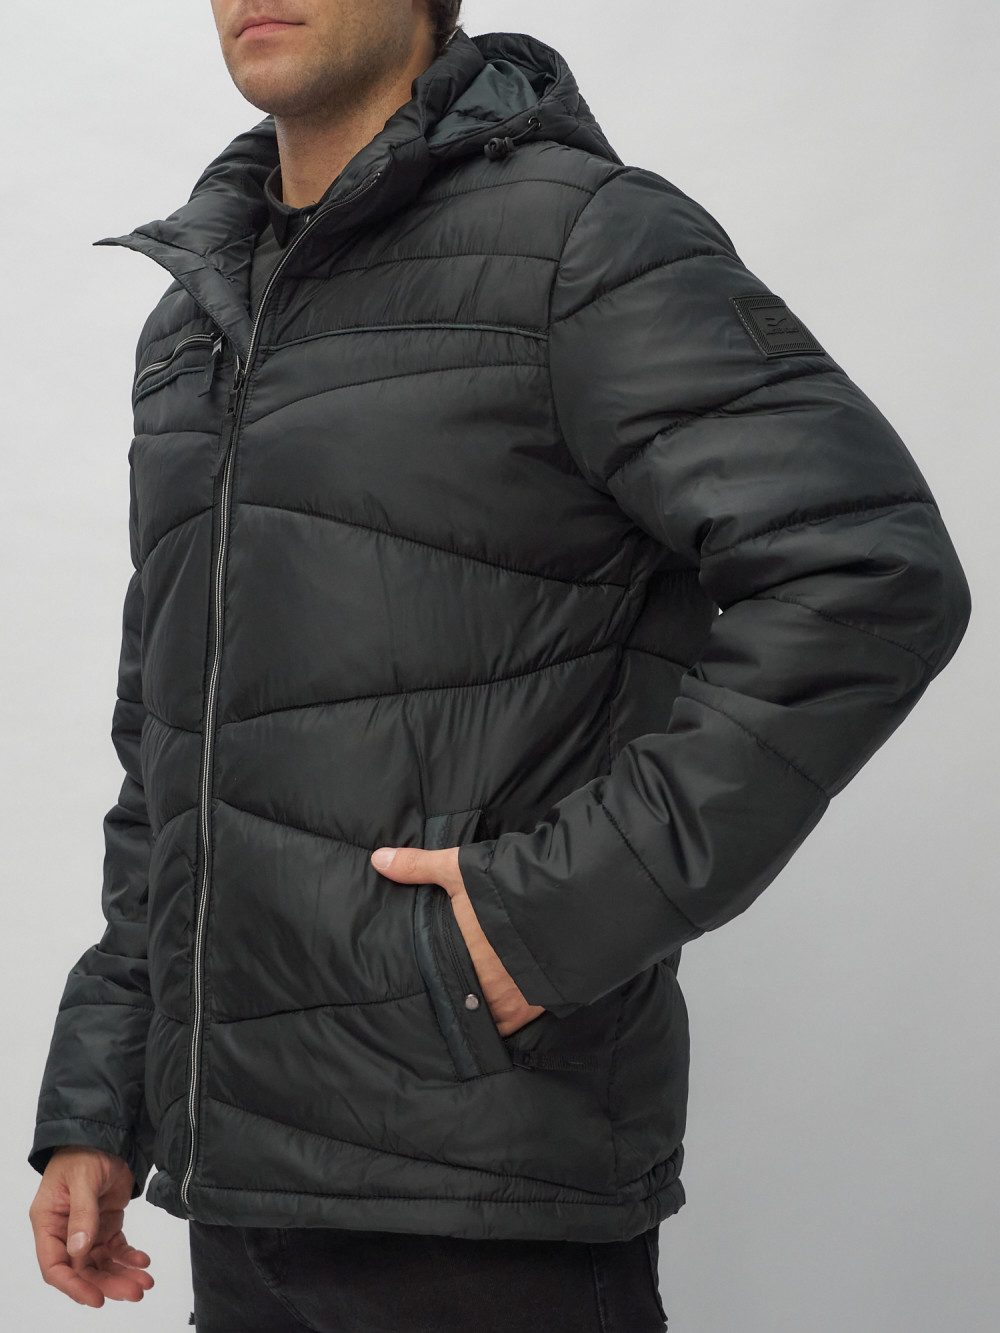 Купить куртку мужскую спортивную весеннюю оптом от производителя недорого в Москве 62188Ch 1